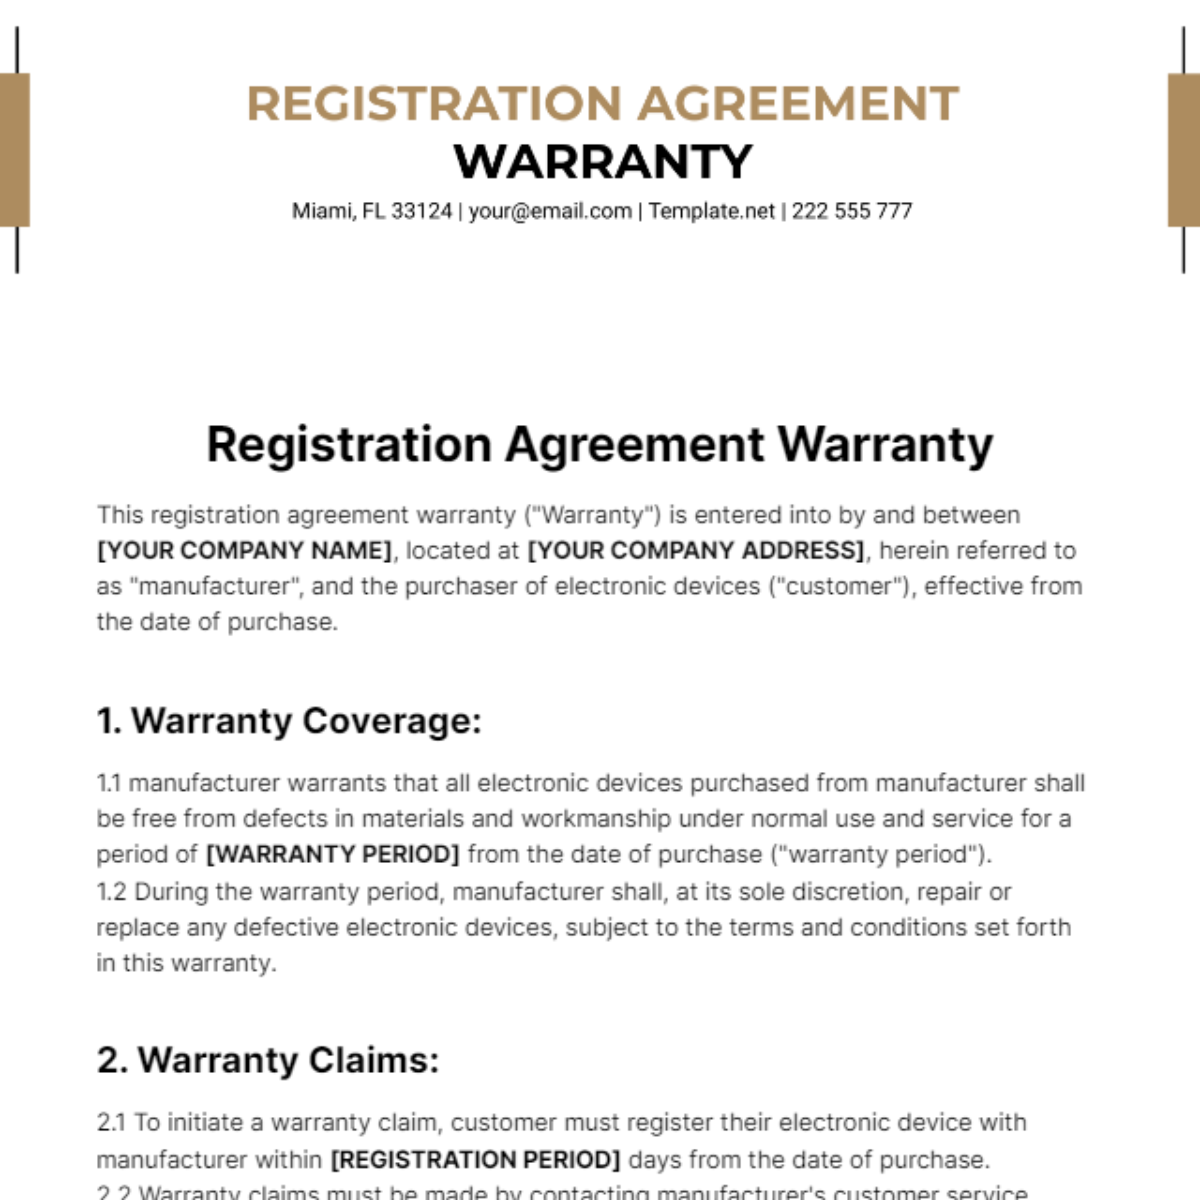 Registration Agreement Warranty Template